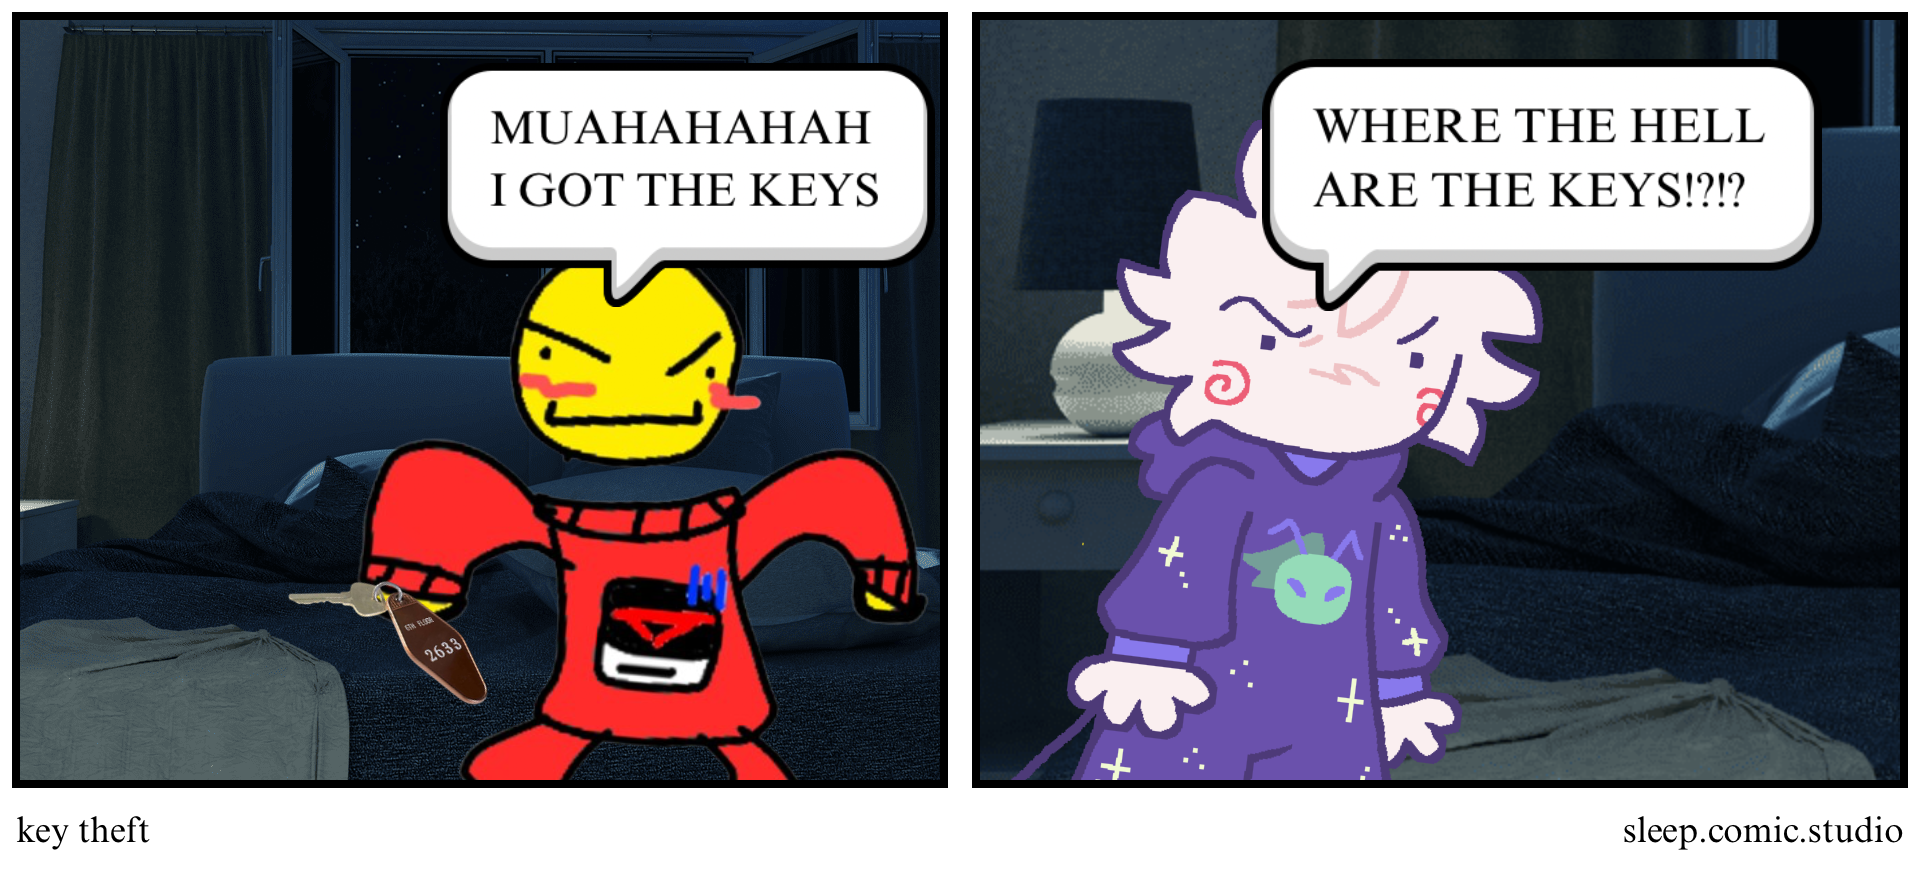 key theft